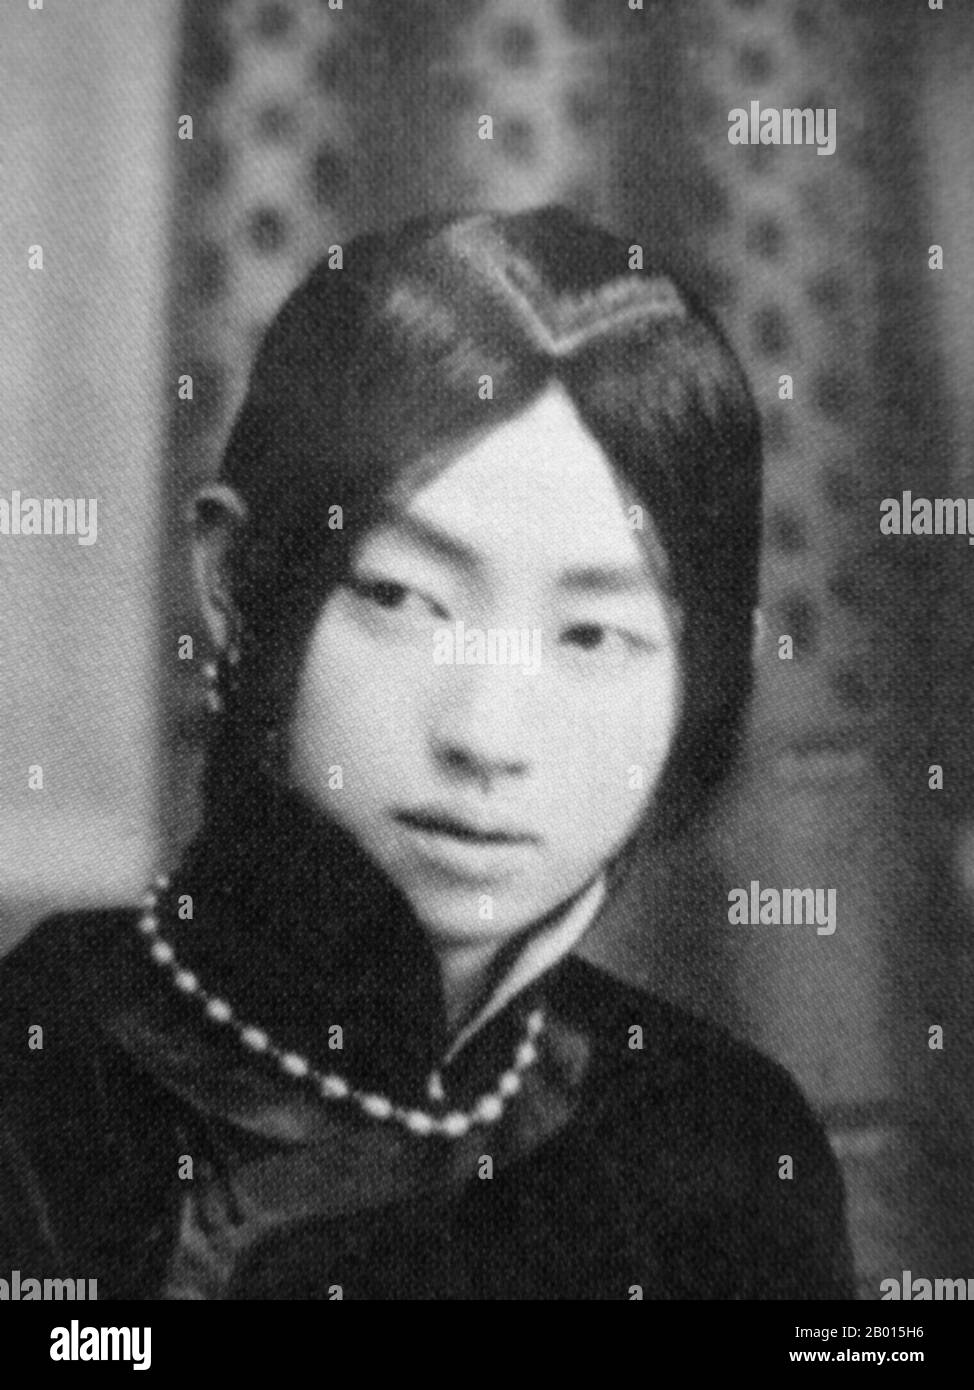 Chine : MEI Lanfang, célèbre artiste d'opéra de Pékin (Peking) (1894-1961). MEI LAN est né à Taizhou, dans le Jiangsu, dans une famille d'artistes de l'Opéra de Pékin et de Kunqu. Il fait ses débuts sur scène au théâtre Guanghe en 1904 quand il avait 10 ans. Au cours de sa carrière de 50 ans, il a maintenu une forte continuité tout en travaillant toujours sur de nouvelles techniques. Ses rôles les plus célèbres étaient ceux des personnages féminins ; sa représentation habile des femmes lui a valu une renommée internationale. Il a également joué un rôle important dans la poursuite de la tradition de performance de Kunqu. Banque D'Images